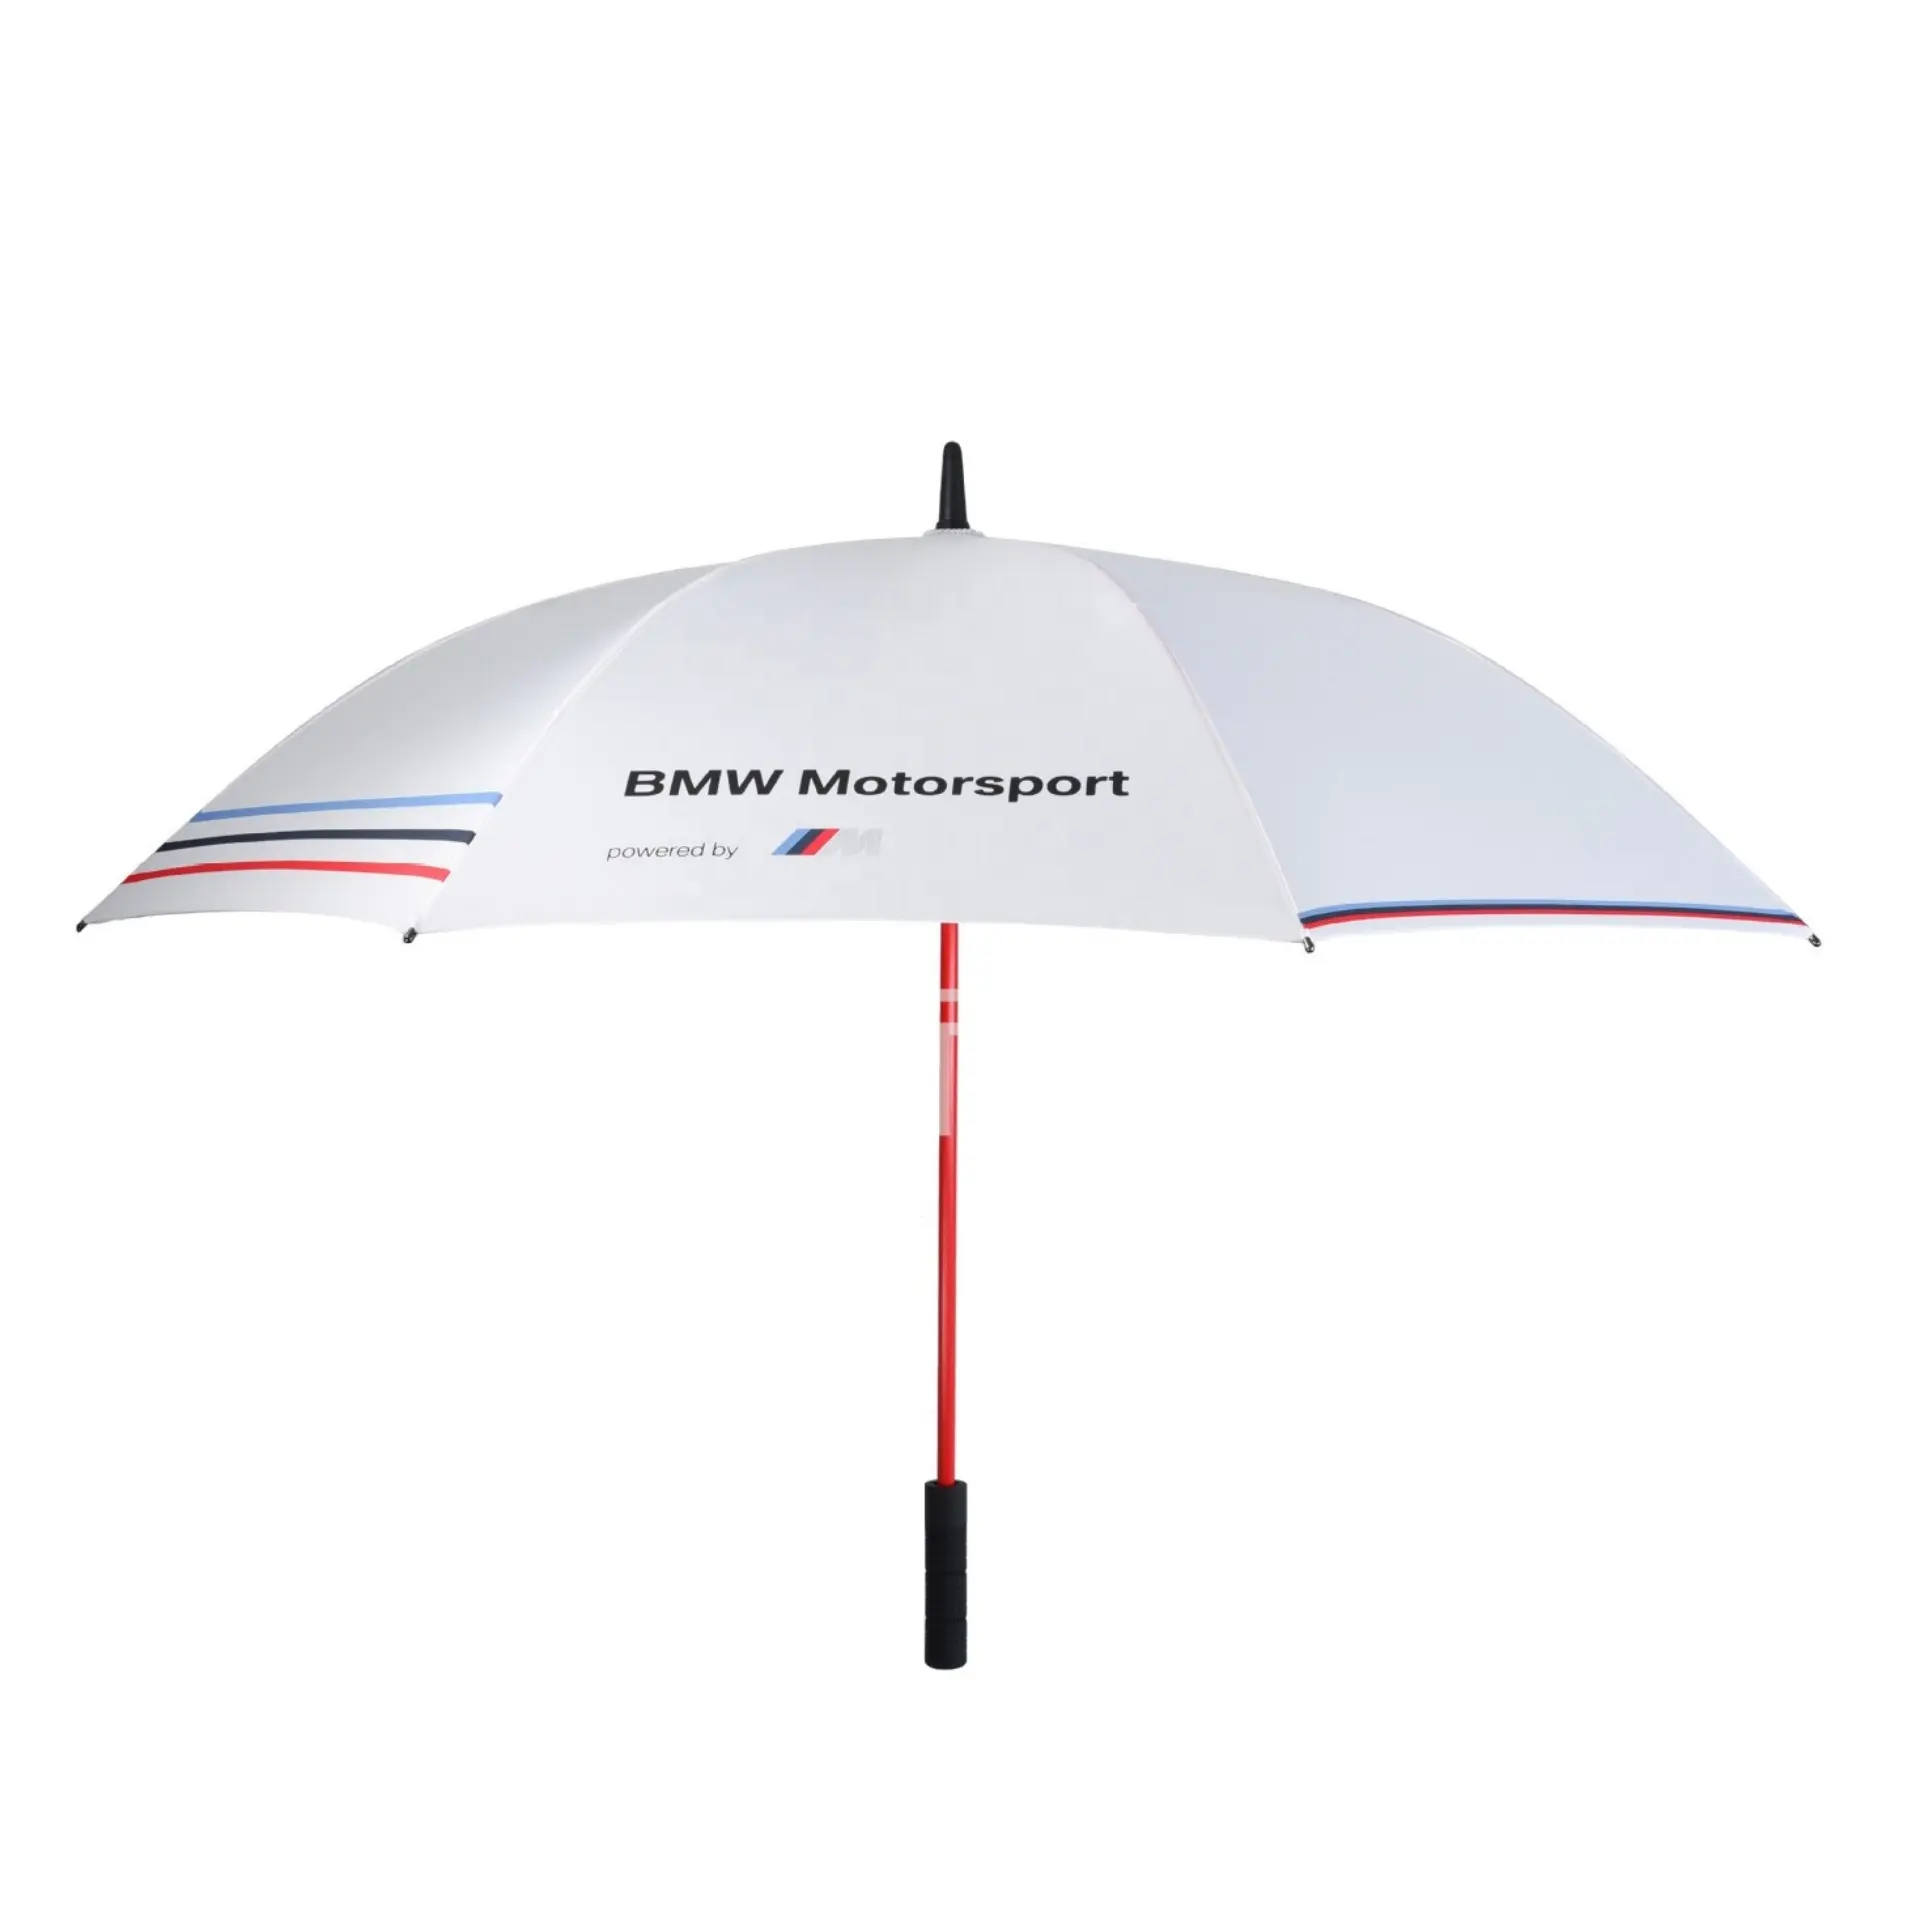 مظلة جولف مظلة واحدة أو بيع بالجملة شبه آلية مزدوجة الاستخدام مظلة جولف للأعمال